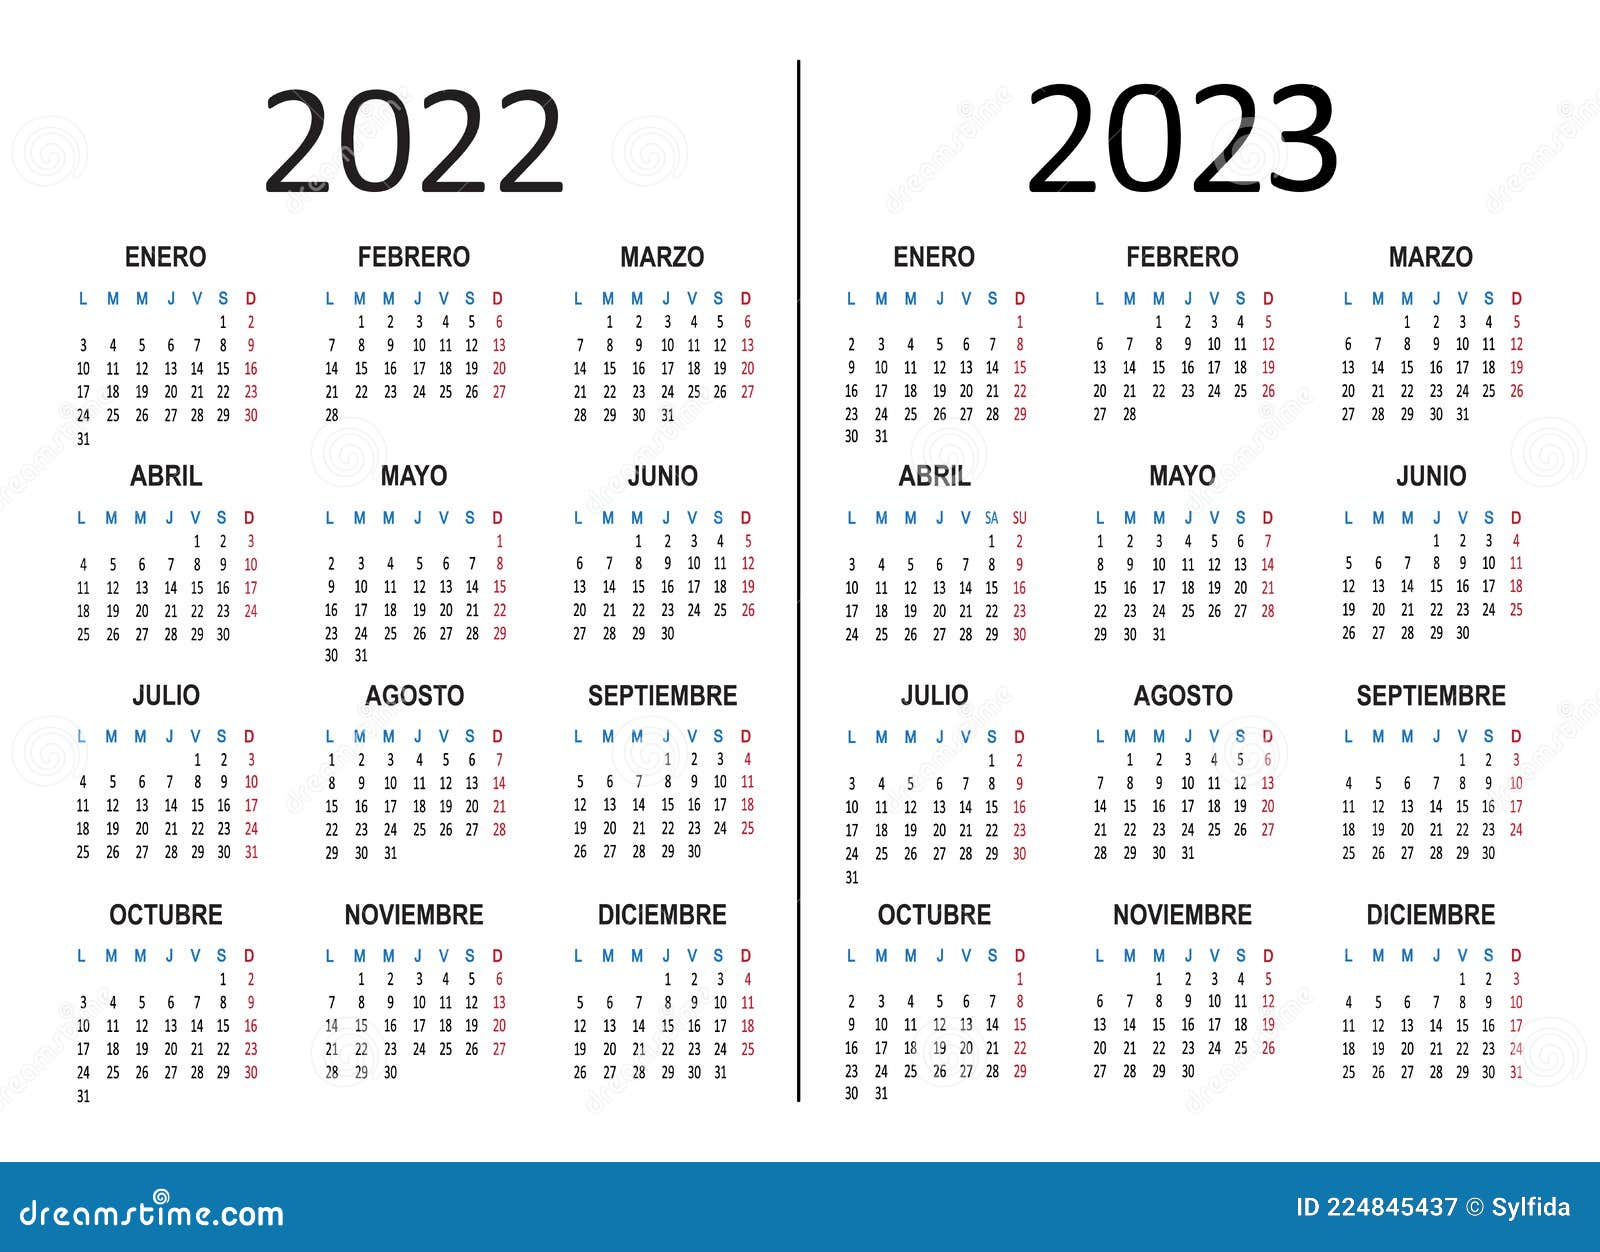 Calendario del 2022 en español